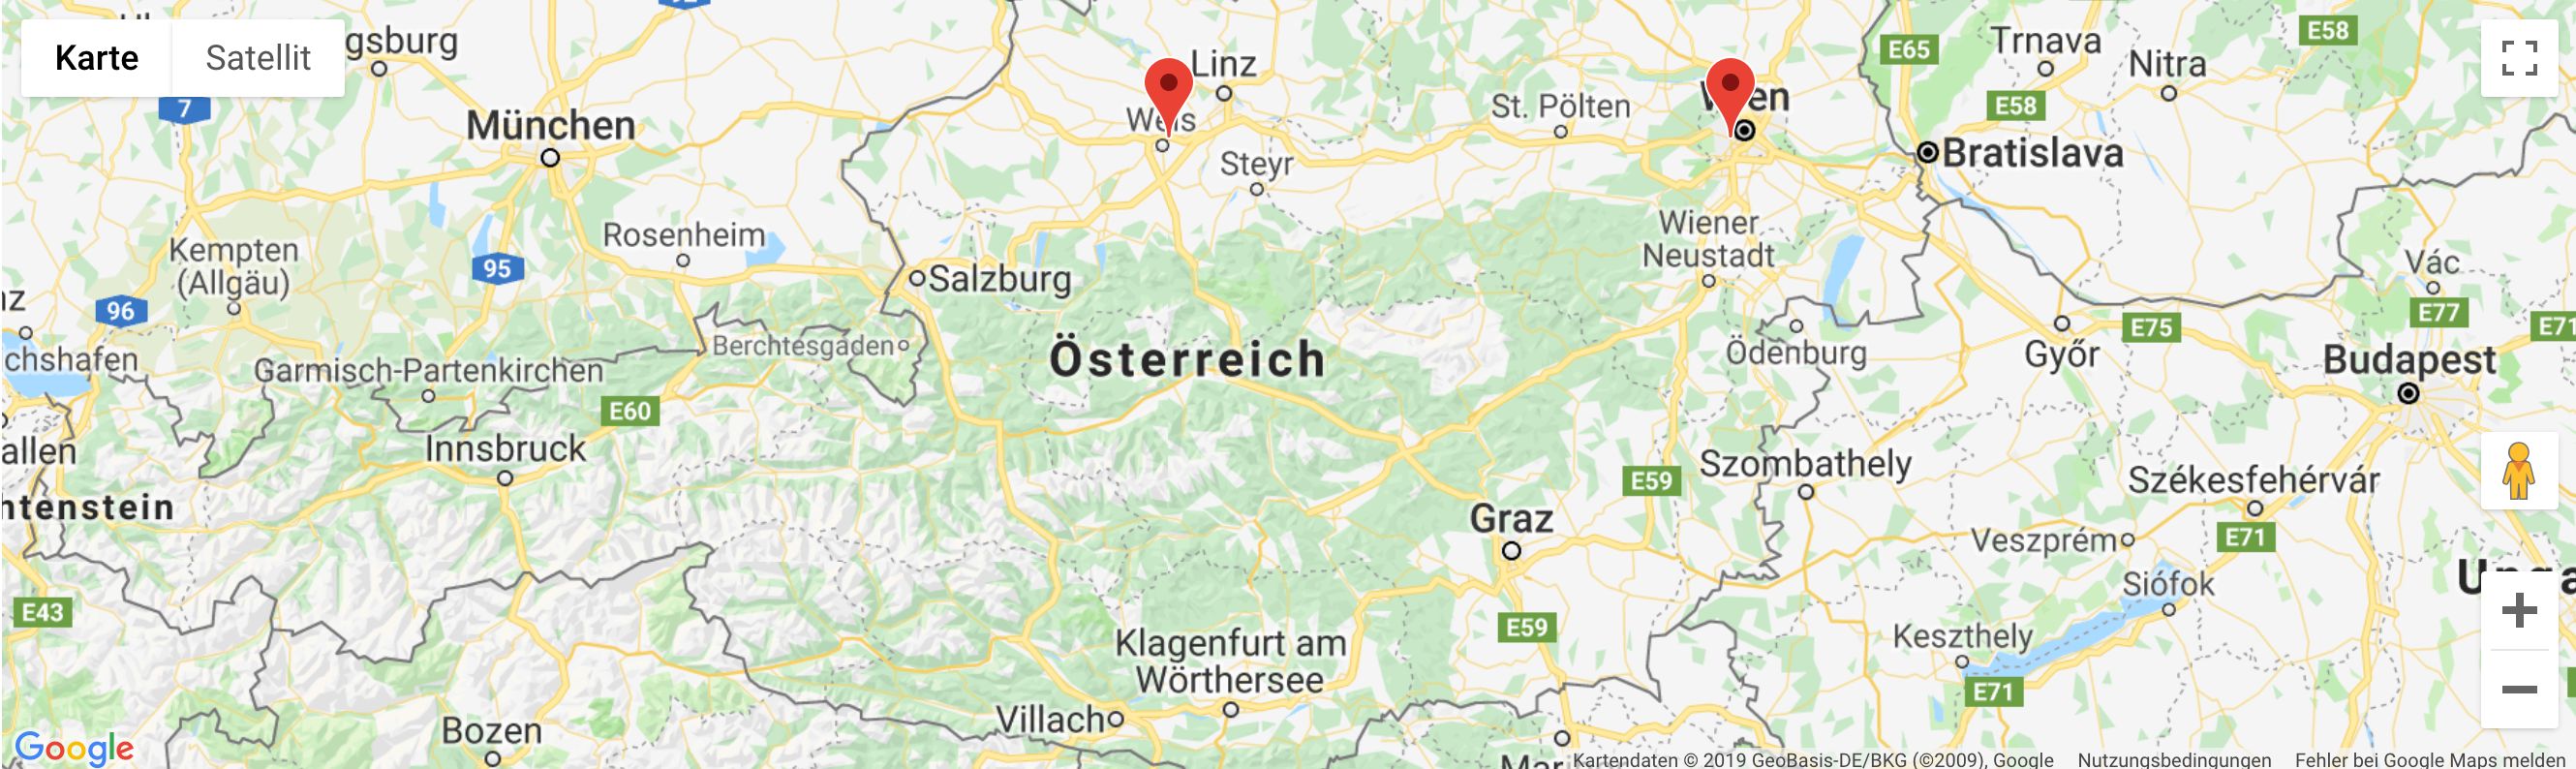 Kostenlose Kleinanzeigen Steiermark Gratis Anzeigen Graz 